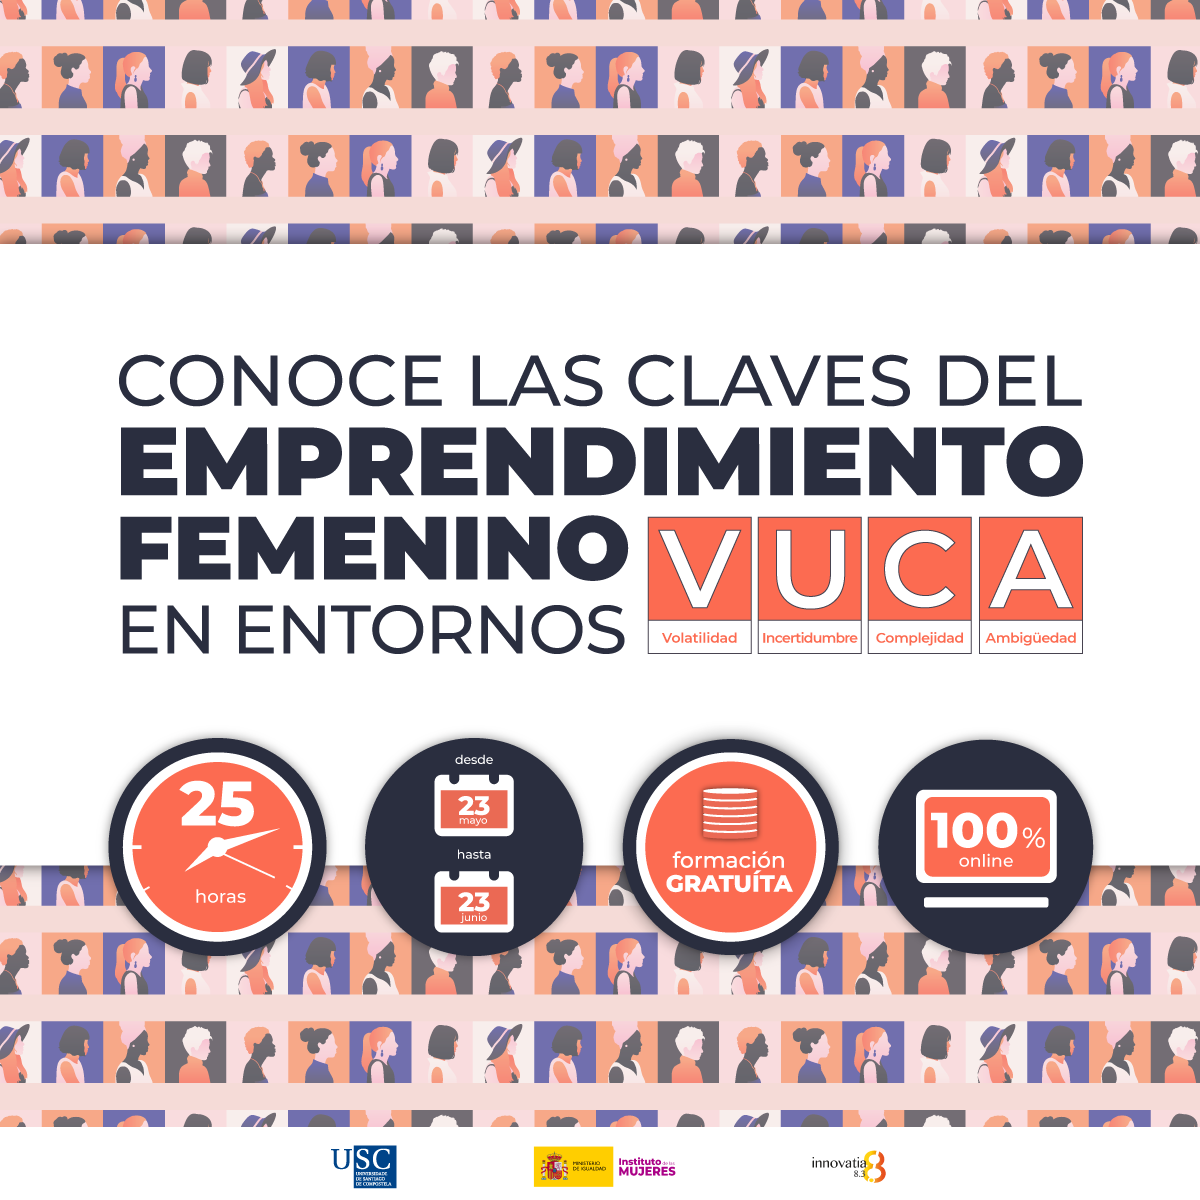  Curso sobre LAS CLAVES DEL EMPRENDIMIENTO FEMENINO EN ENTORNOS VUCA